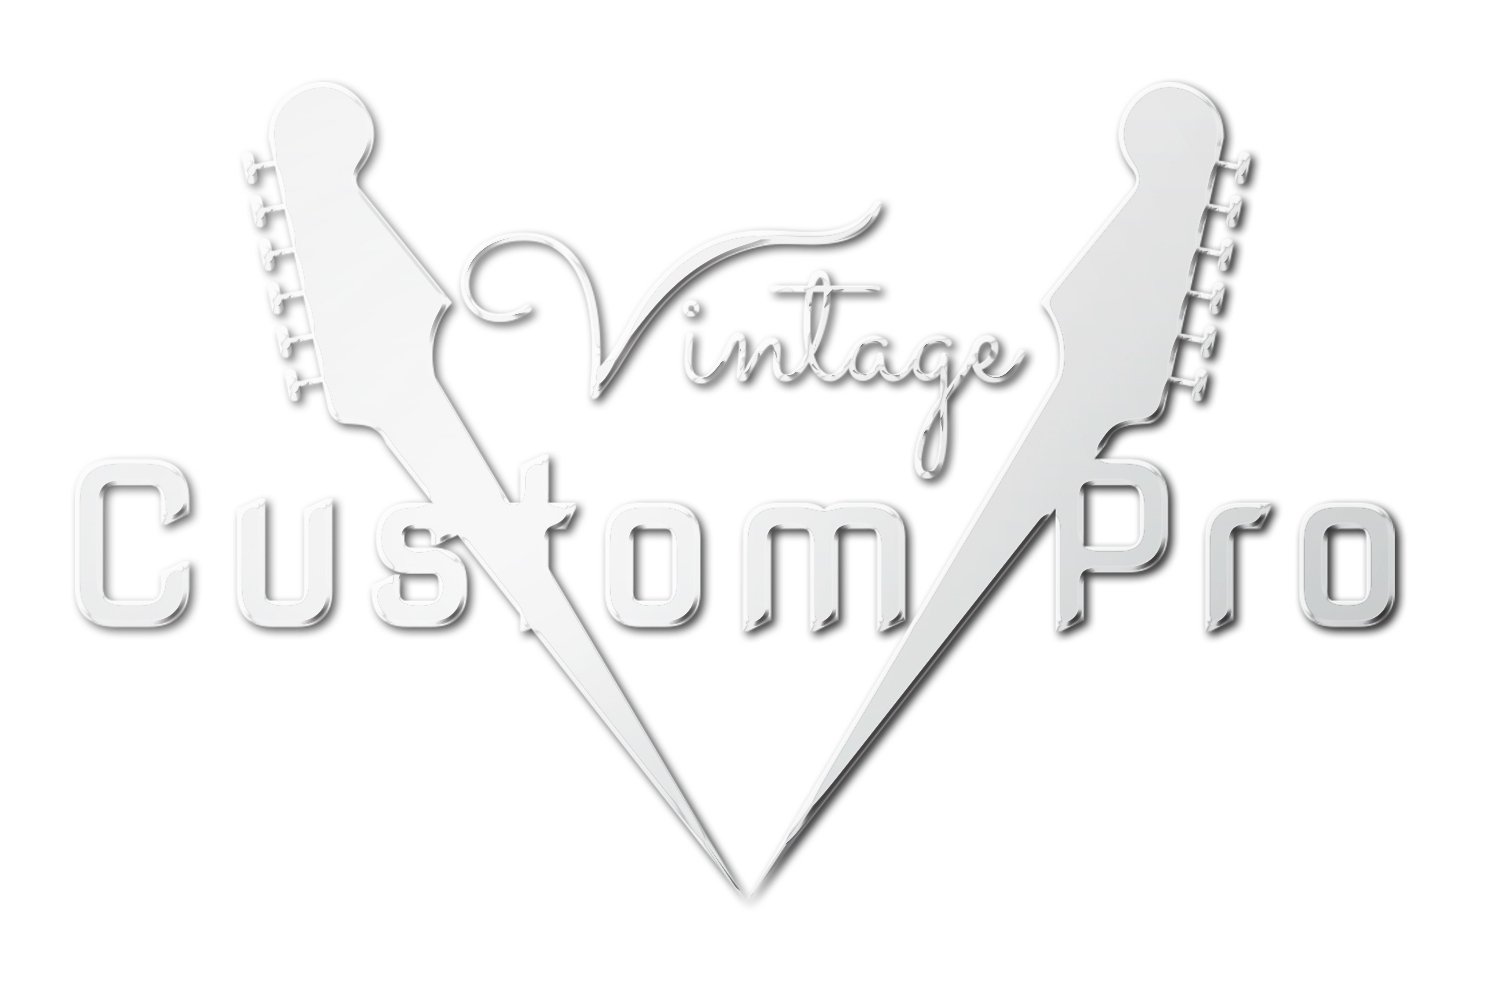 Vintage* V100HB Electric Guitar, Electric Guitar for sale at Richards Guitars.